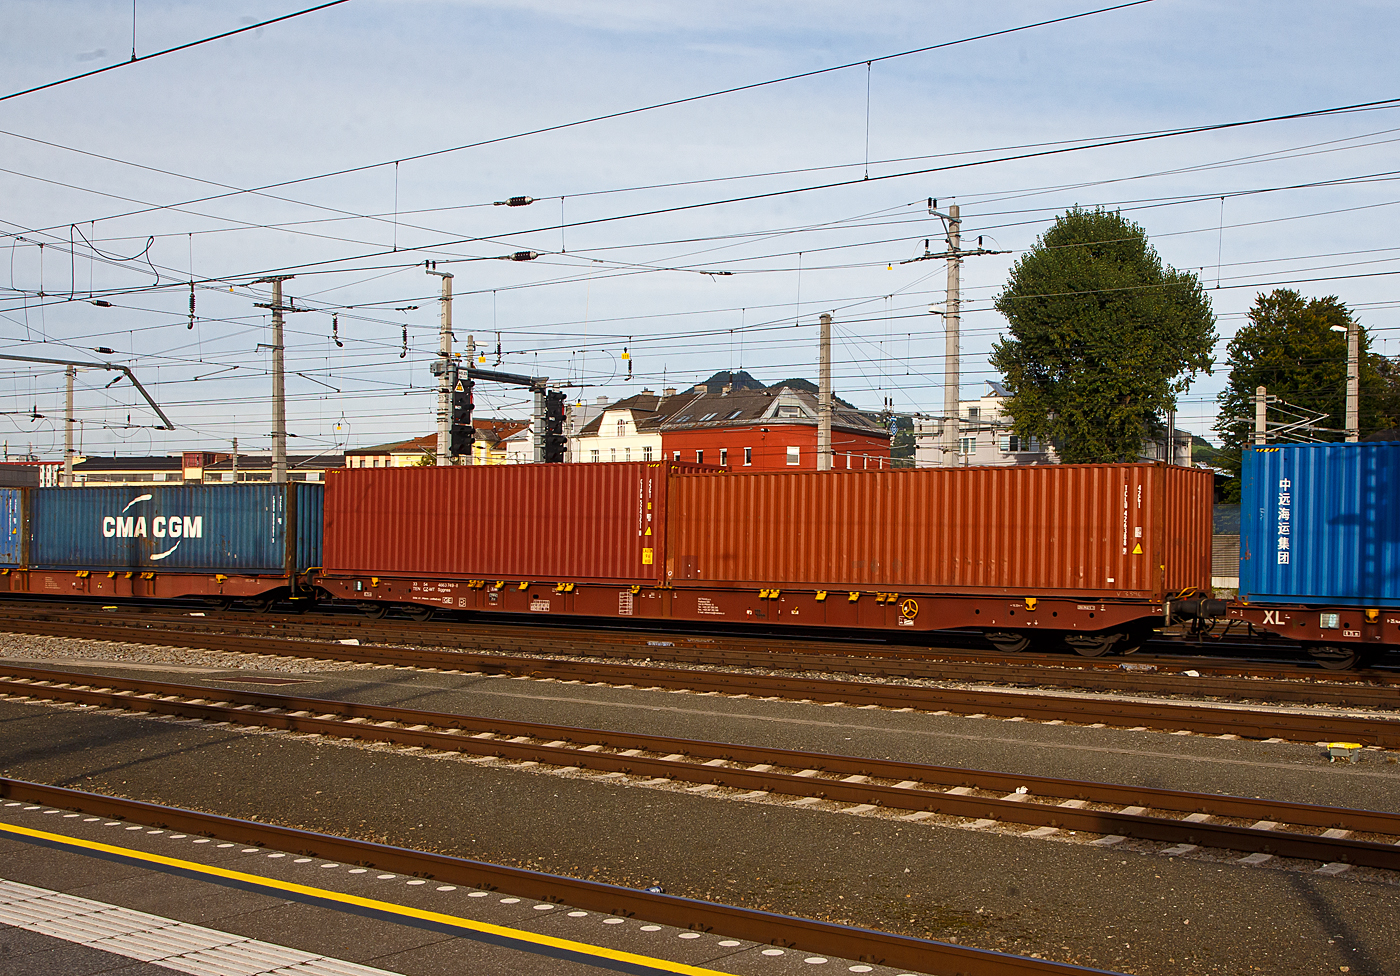 Vierachsiger Drehgestell-Containertragwagen 33 54 4663 749-8 CZ-MT, der Gattung Sggnss 80´, der METRANS Rail s.r.o. (Prag / Praha), am 12.09.2022 im Zugverband, beladen mit zwei 40ft-Containern bei einer Zugdurchfahrt im Hbf Salzburg. Die METRANS ist ein 100 %-iges Tochterunternehmen der Hamburger Hafen und Logistik AG (HHLA). Sie ist Marktführer für Containertransporte im Seehafenhinterlandverkehr mit Mittel-, Ost- und Südosteuropa. Eigene Inland-Terminals, spezielle Loks  und umweltfreundliche Containertragwagen ermöglichen flexible, qualitativ hochwertige Angebote. 

Der LIGHT EIGHTY Sggnss 80’ wurde vom slowakischen Hersteller TATRAVAGÓNKA schon 2010 auf Veranlassung von METRANS entwickelt. Nicht nur dank seinem geringen Gewicht von ca. 22 t, sondern auch wegen den einzigartigen Lademöglichkeiten (5 Container­Bauarten und Wechselaufbauten in 30 verschiedenen Containerkombinationen) hat sich dieser Wagen schnell auf dem Markt etabliert. Im Vergleich zum 80’ langen Standardwagen kann bei dieser Variante ein Wagen mehr in Güterzüge aufgenommen werden. Durch die neuartige Konstruktion dieses TSI­konformen Wagens konnte nicht nur der Lärmpegel auf einen Messwert von 78 dB(A) reduziert werden. Eine Energieeinsparung von 20 % im Vergleich zum 80’-langen Standardgelenkwagen ermöglicht eine weitere Steigerung der Transporteffizienz. Weniger Drehgestellbedarf bedeutet weniger Instandhaltungsaufwand für Bremssysteme.

TECHNISCHE DATEN:
Spurweite: 1 435 mm
Anzahl der Achsen: 4 in zwei Drehgestellen
Länge über Puffer: 25.940 mm
Drehzapfenabstand: 19.300 mm
Achsabstand im Drehgestell: 1.800mm
Laufraddurchmesser: 920 mm (neu)
Ladelänge : 24 700 mm  (z.B. 2 x 40’ ISO Container)
Höhe der Ladeebene über SOK: 1 155 mm
Höchstgeschwindigkeit: 100 km/h (Lastgrenze SS) / 120 km/h (bei Lastgrenze S oder leer)
Max. Zuladung bei Lastgrenze S: 68,5 t (ab Streckenklasse D)
Max. Zuladung bei Lastgrenze SS: 58,5 t (ab Streckenklasse C)
Eigengewicht: 21.500 kg
Kleinster bef. Gleisbogenradius: R 75 m
Bauart der Bremse: KE-GP-A (K)
Bremssohle: Jurid 816M
Feststellbremse: Ja
Intern. Verwendungsfähigkeit: TEN-GE

Erläuterung: Lastgrenze S = 20 t Radsatzlast, Lastgrenze SS = 22,5 t Radsatzlast.